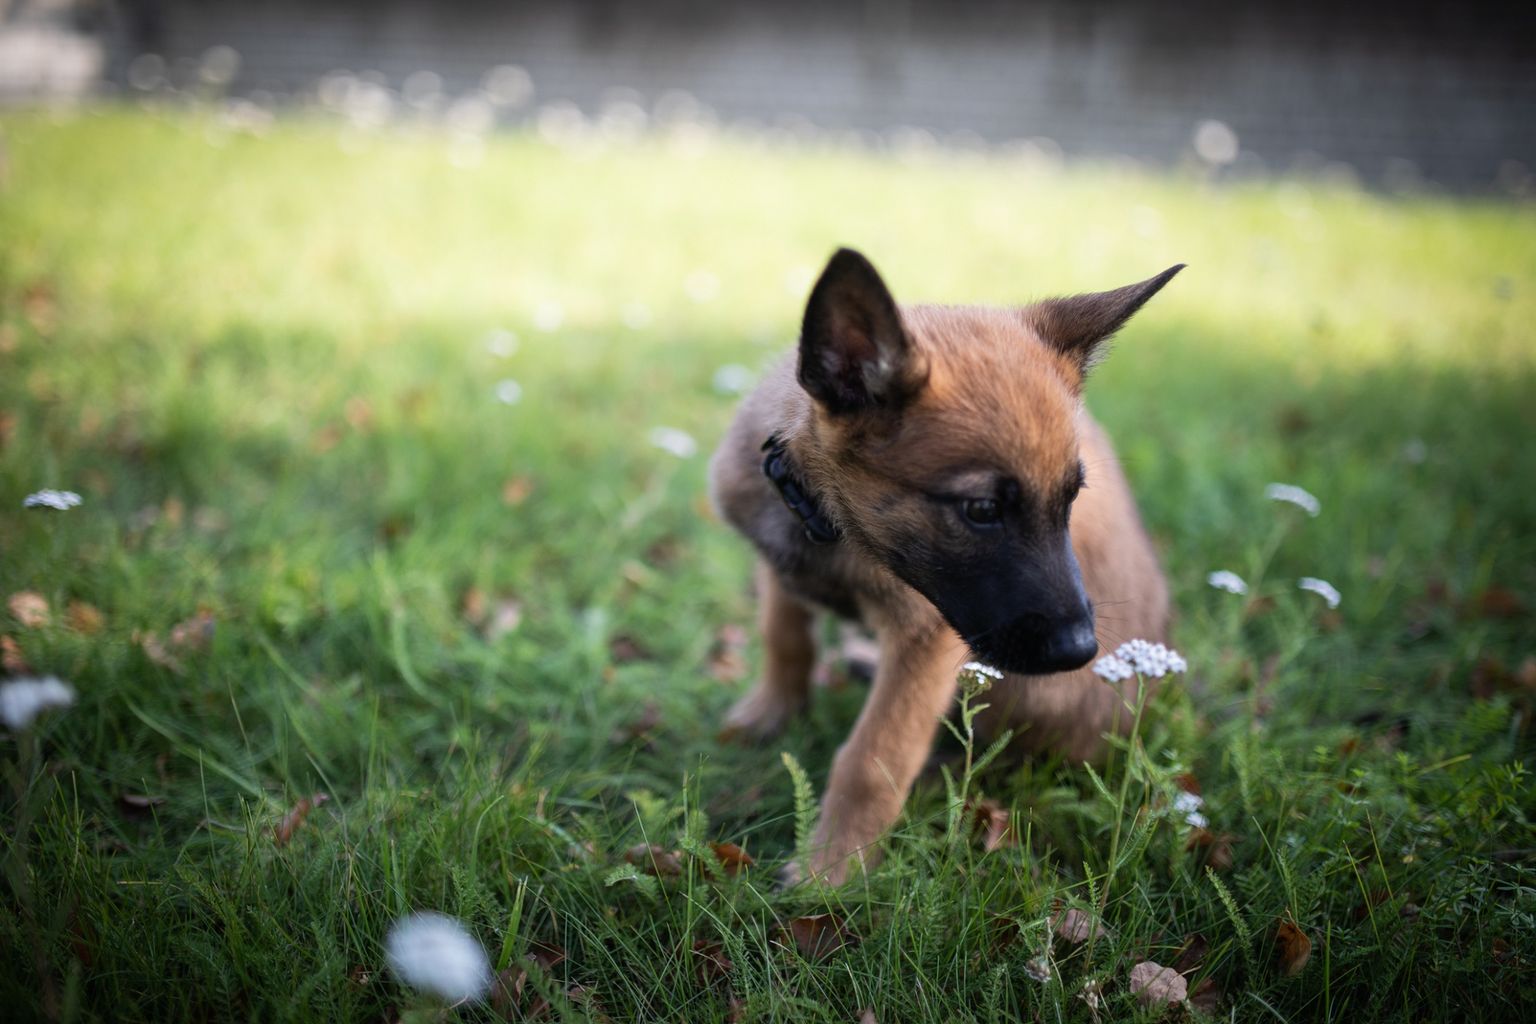 Ряды специального подразделения эстонской полиции K-komando пополнил двухмесячный щенок бельгийской овчарки по кличке Террор.